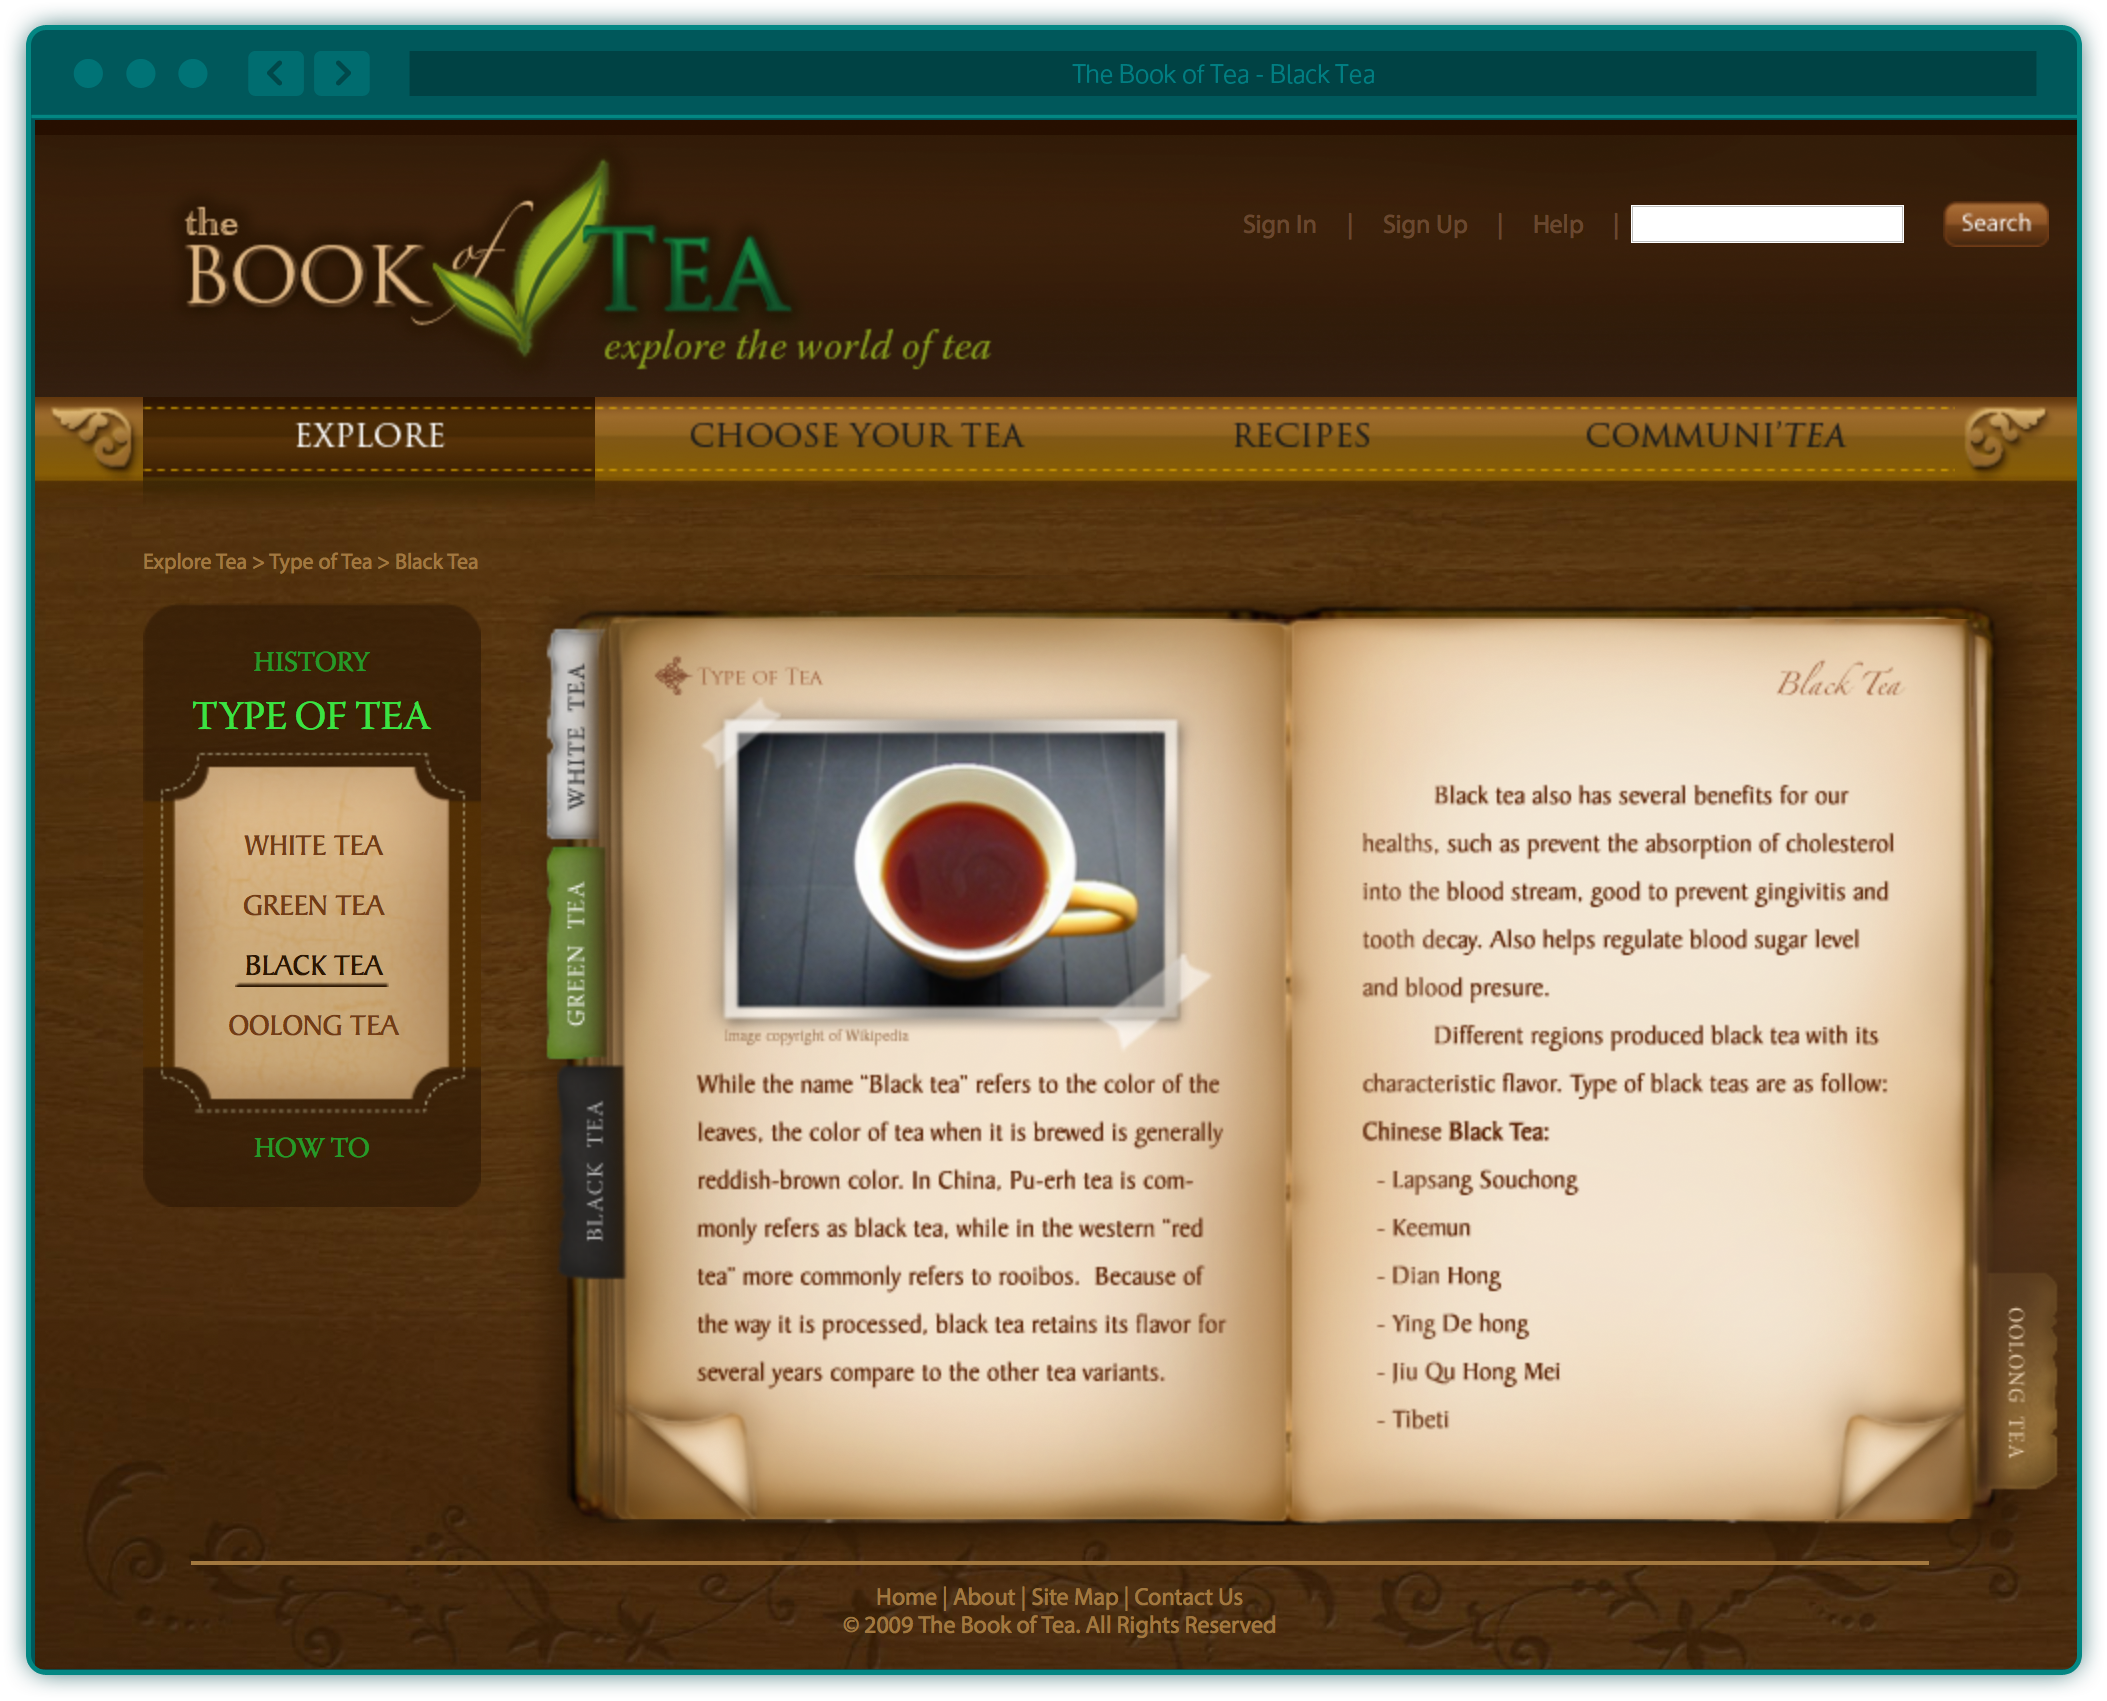 The Book of Tea website - Black tea